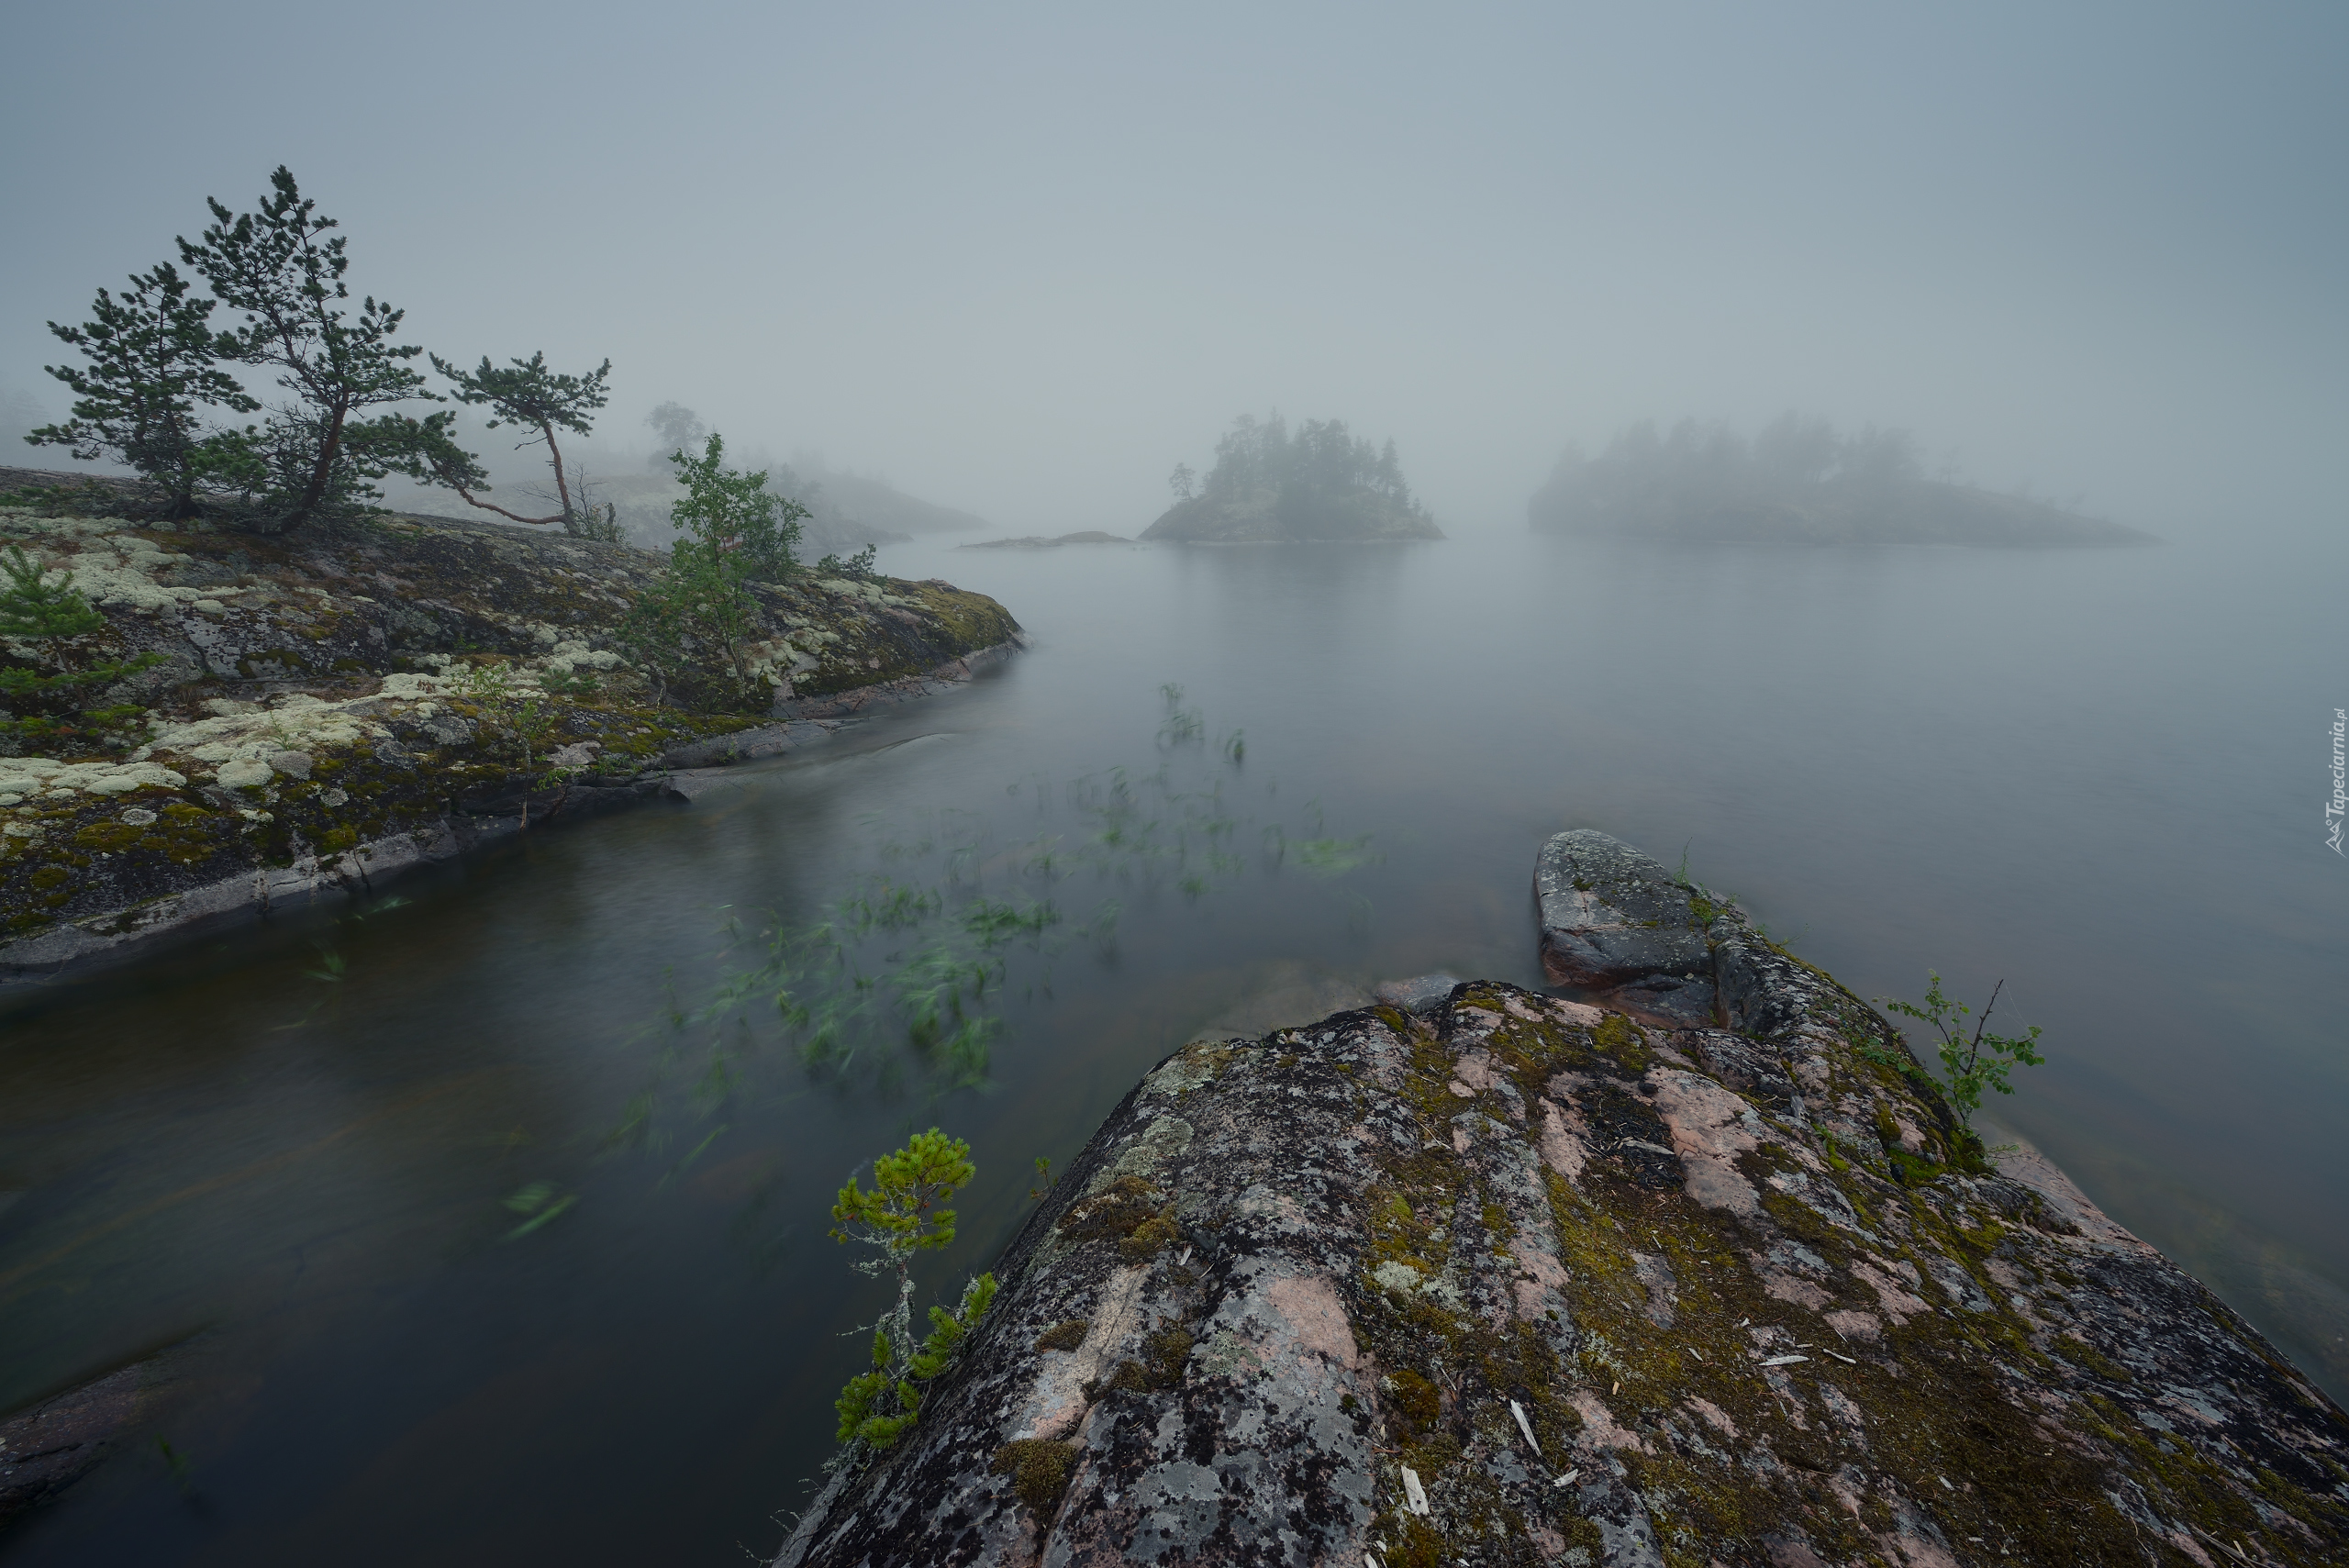 Jezioro Ładoga, Mgła, Drzewka, Skały, Wysepki, Karelia, Rosja